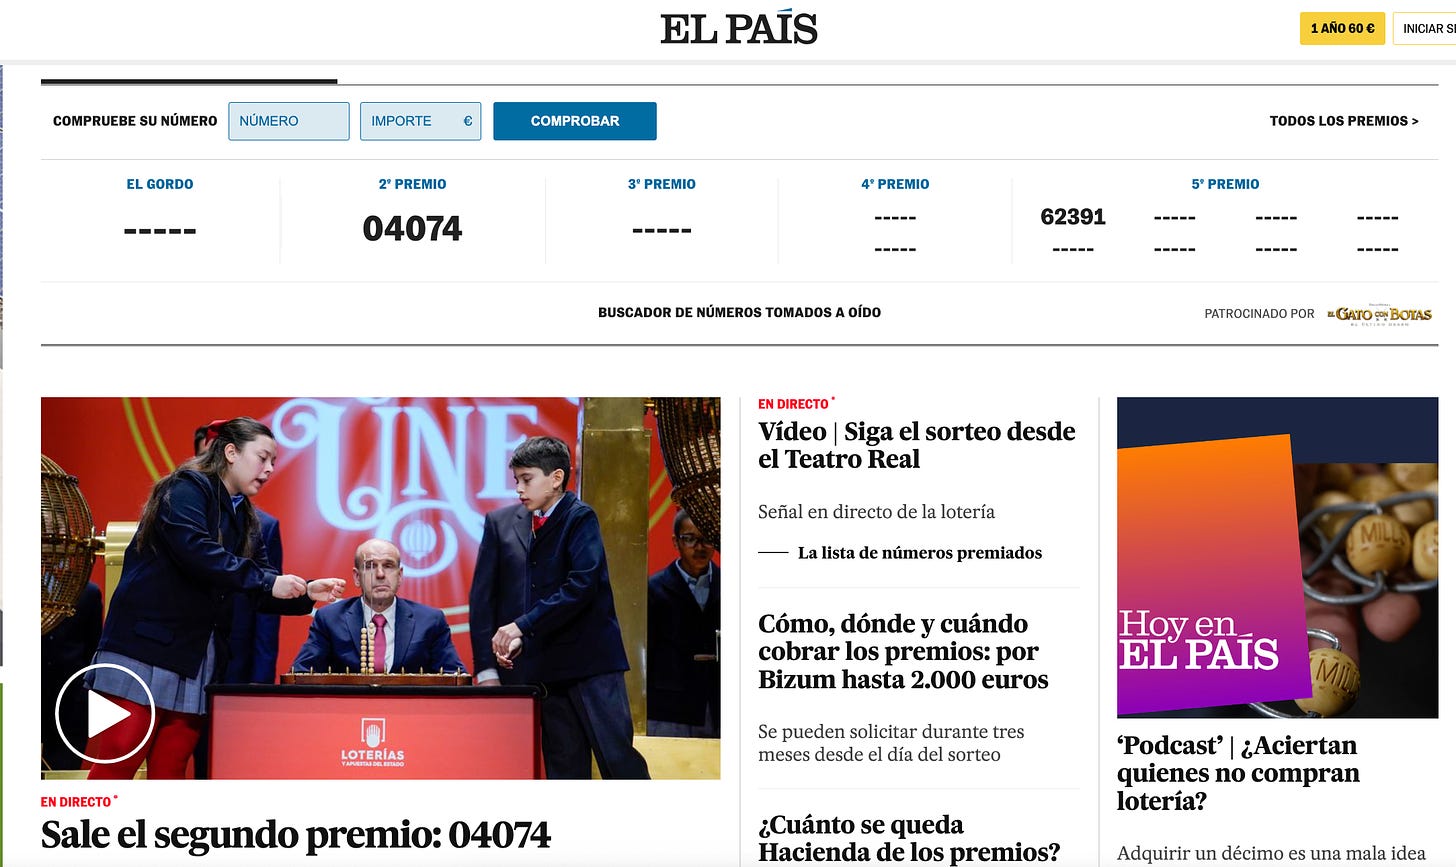 La homepage de El Pais del 22 dicembre, in cima il riassunto dei premi già estratti della lotteria: seguono articoli sullo stesso tema.